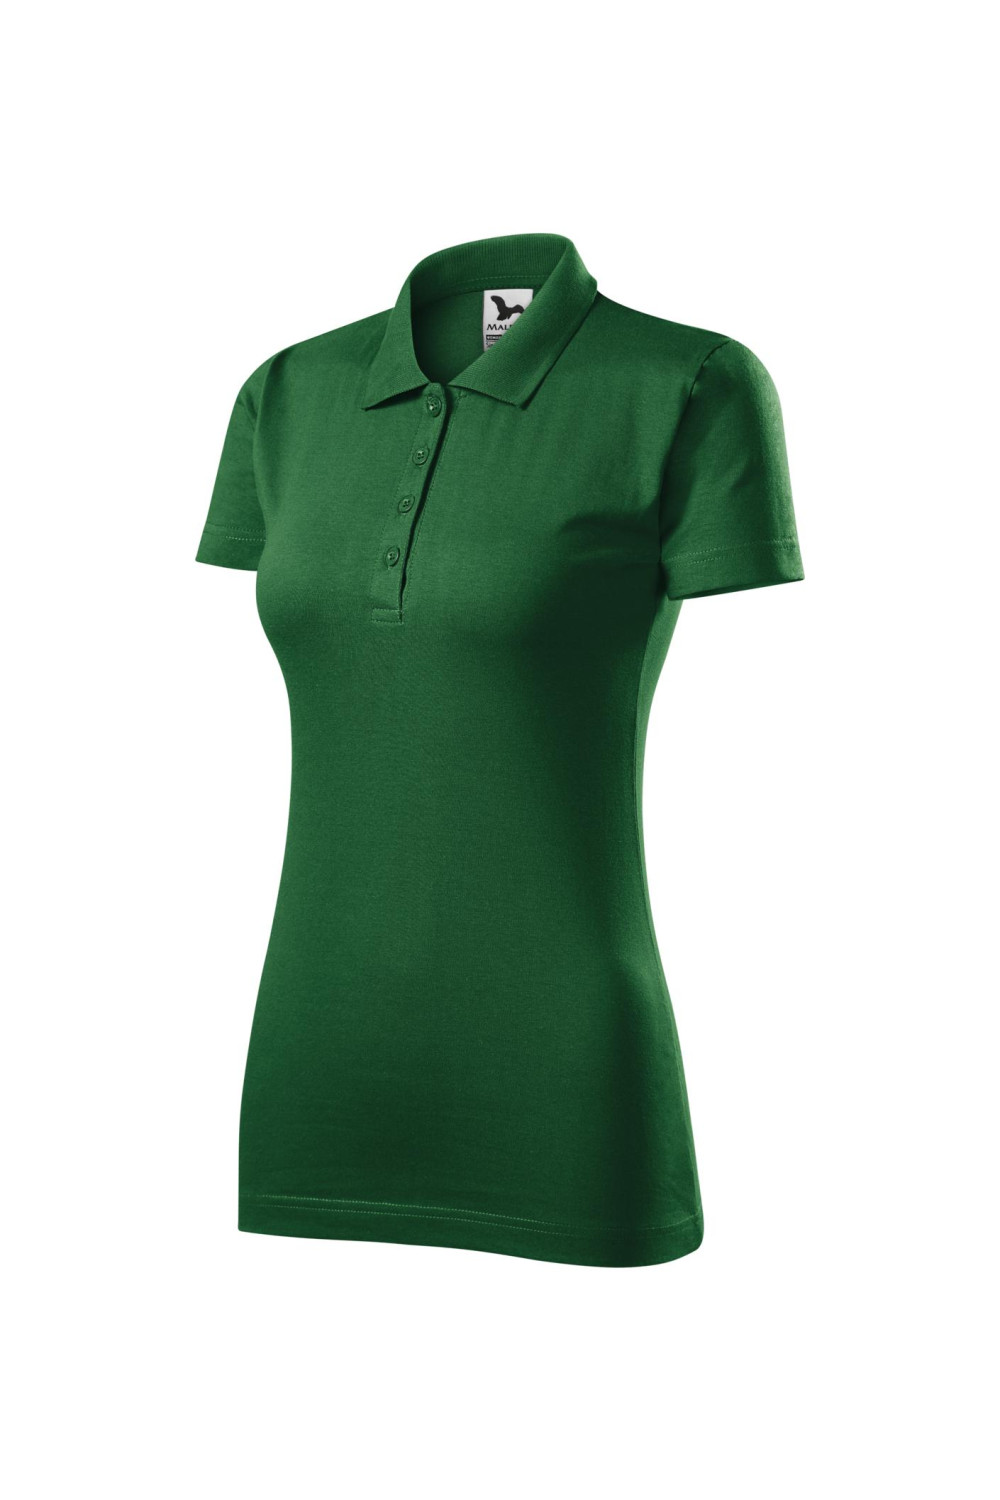 SINGLE J. 223 MALFINI ADLER Koszulka polo damska klasyczna 100% bawełna zieleń butelkowa